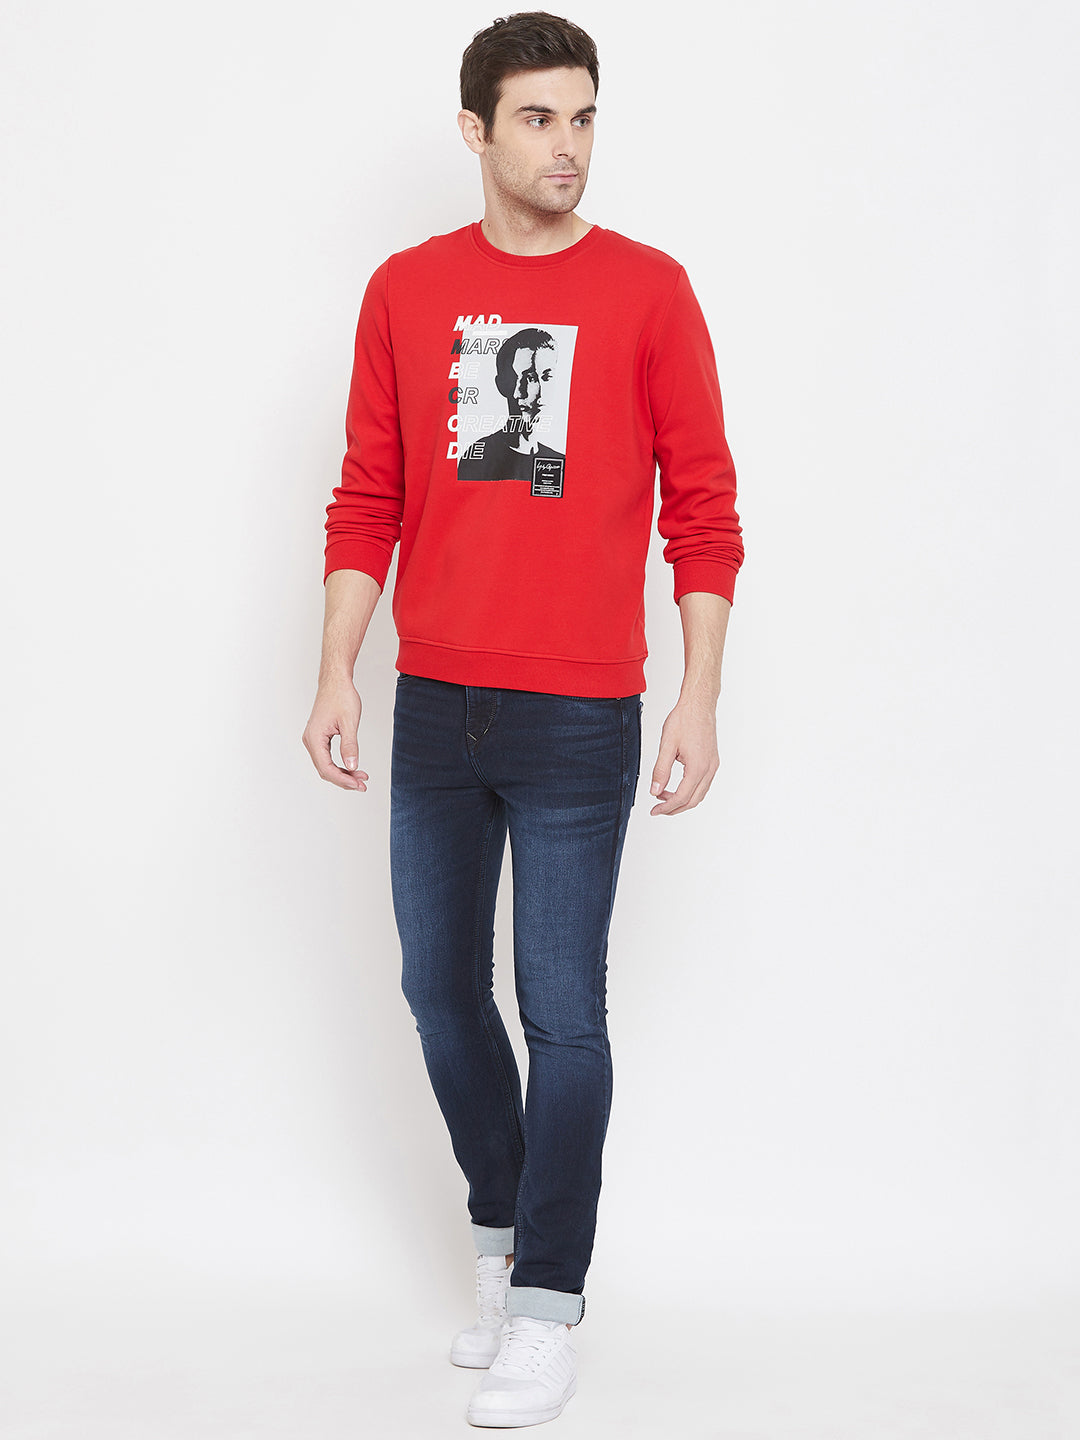 Red Printed Round Neck Sweatshirt - Men Sweatshirts